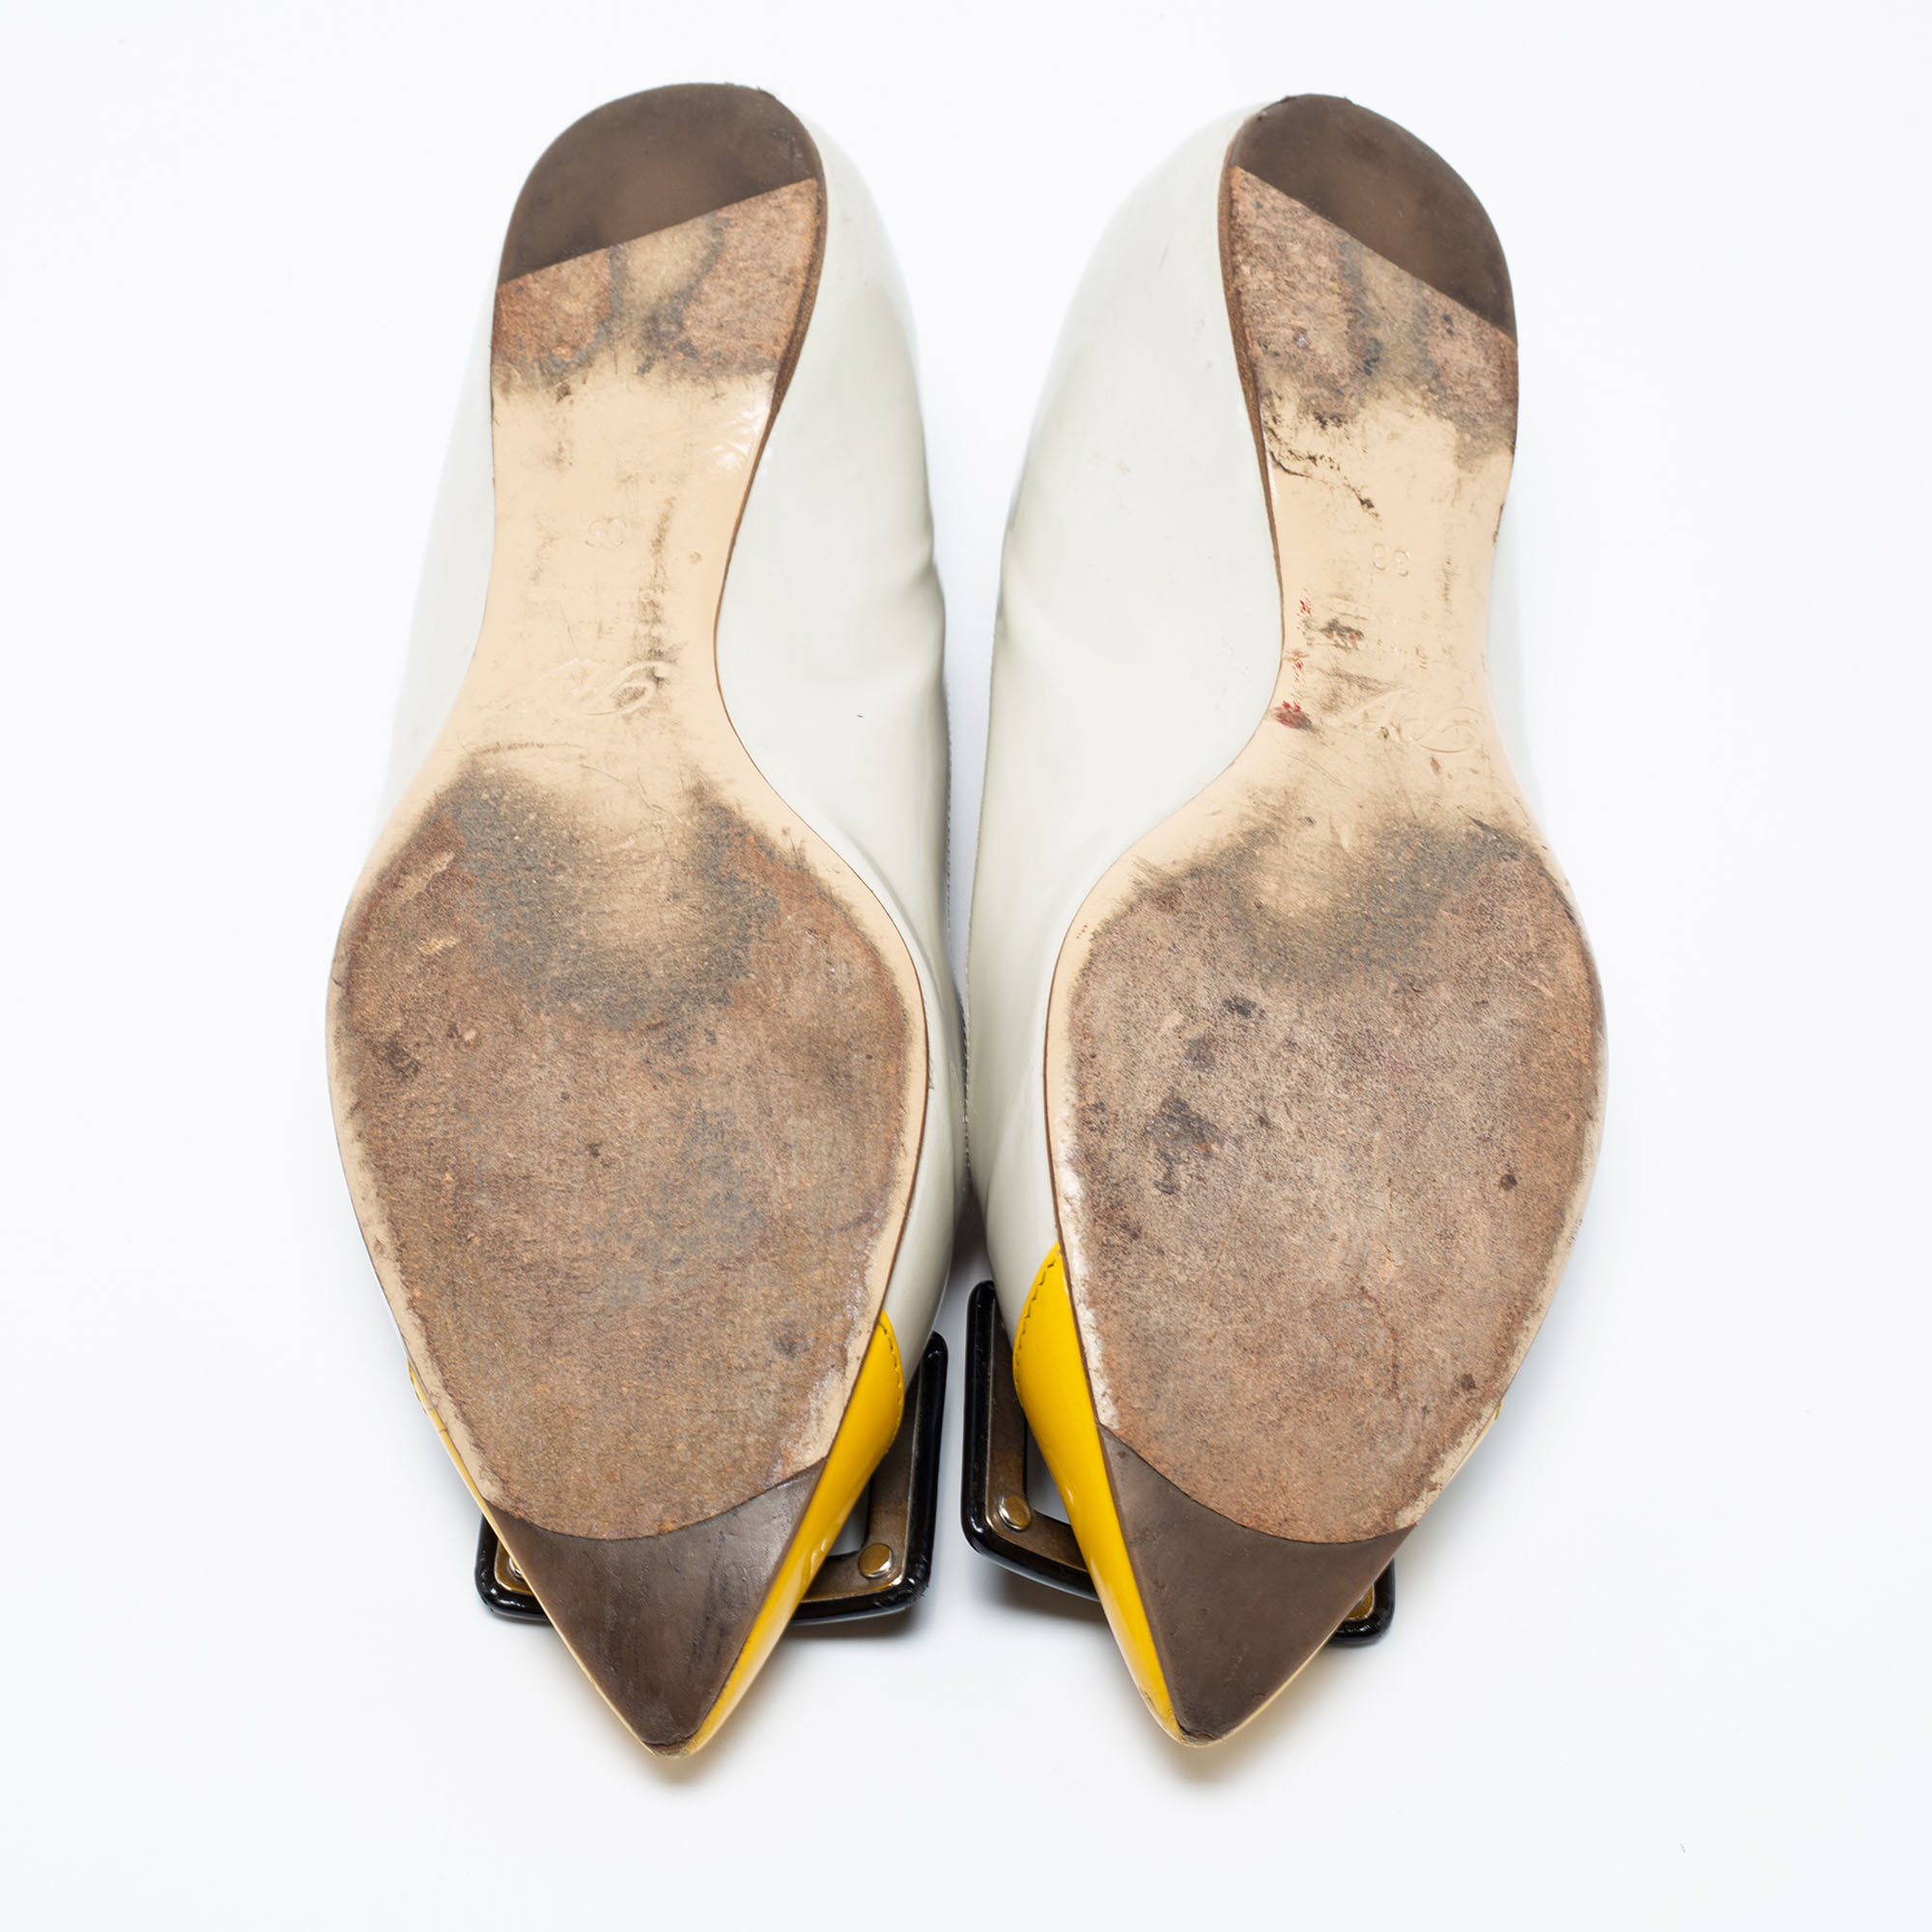 Roger Vivier Tri-Color Patent Leather Trompette Ballet Flats Size 36